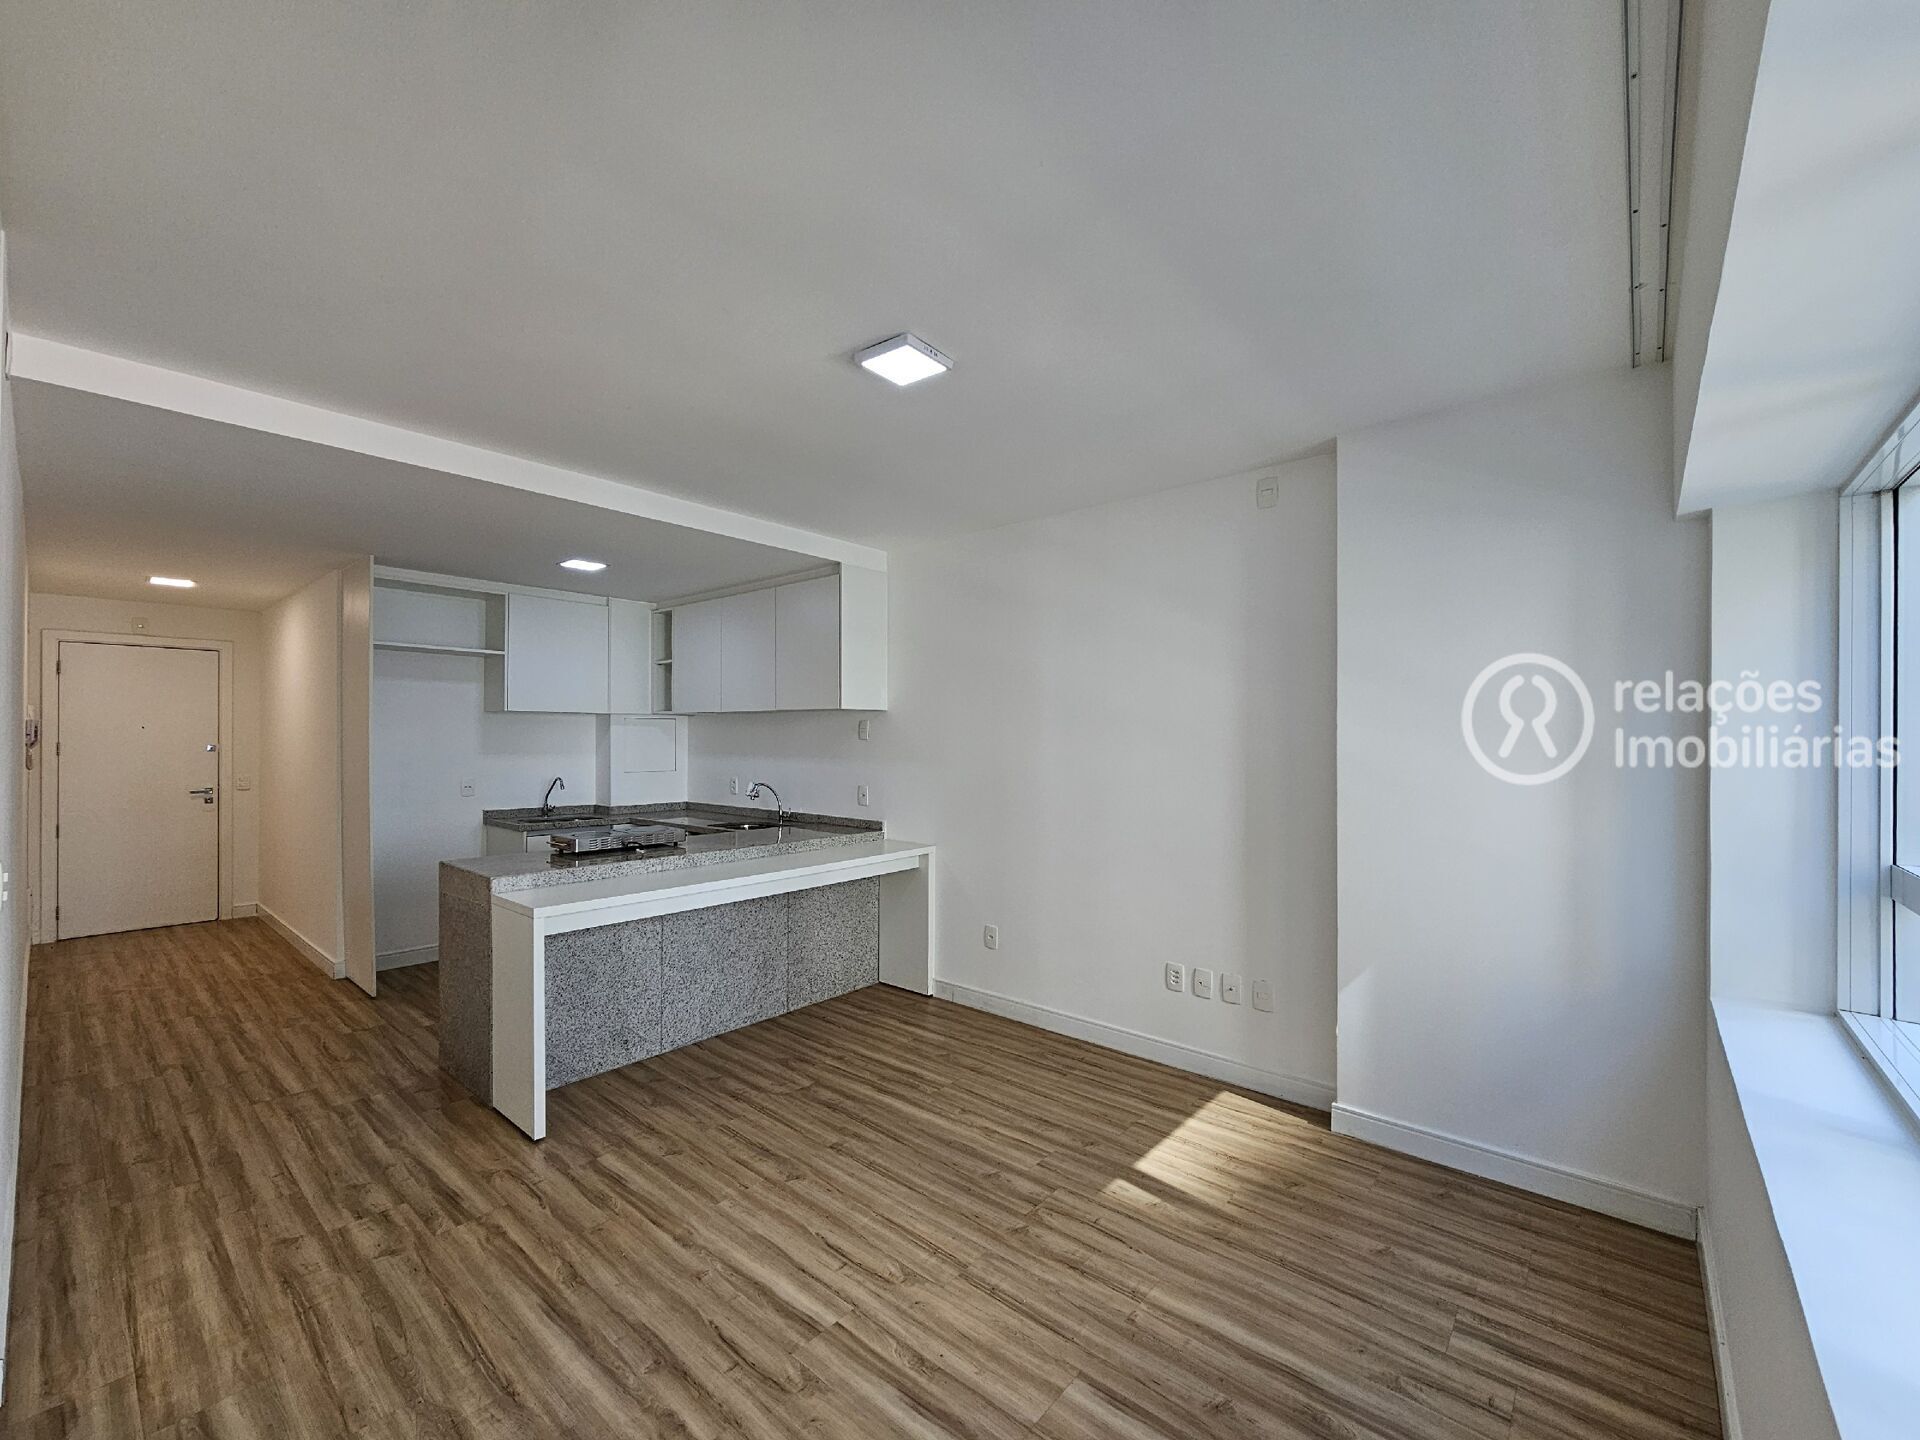 Apartamento, 1 quarto, 42 m² - Foto 2